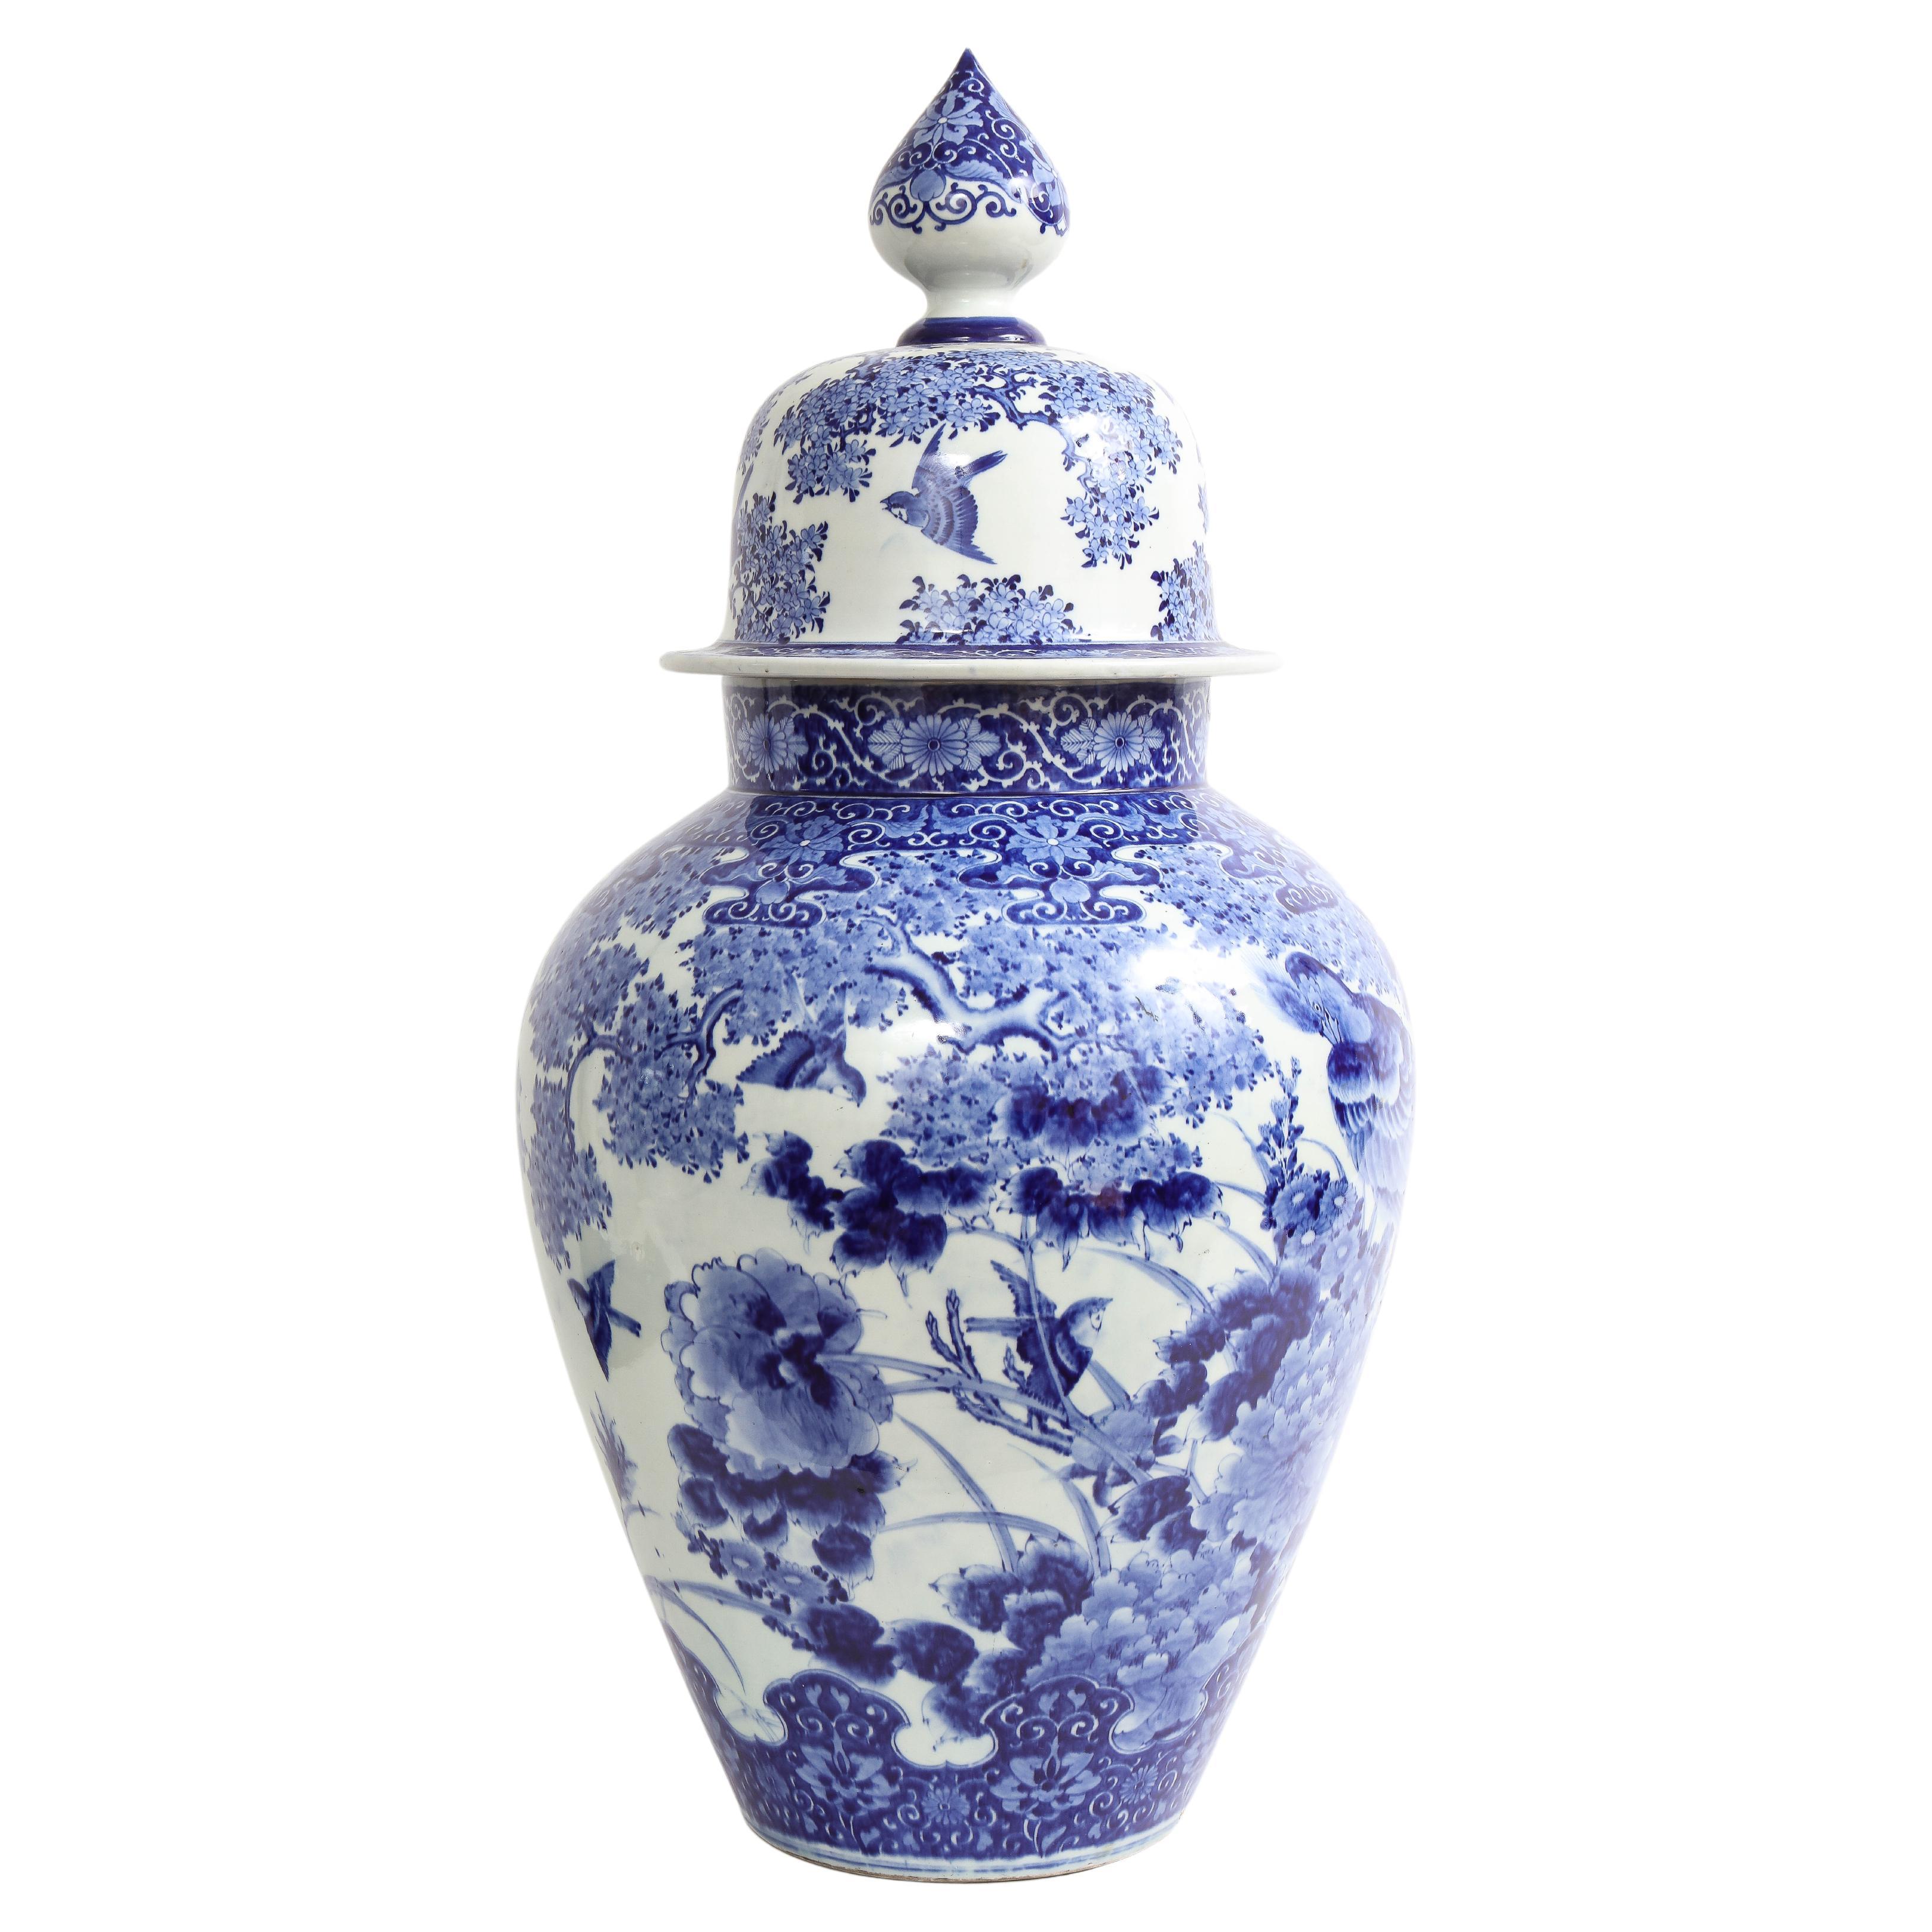 Grand vase japonais recouvert de bleu et blanc avec dcoration de faisan et de fleurs